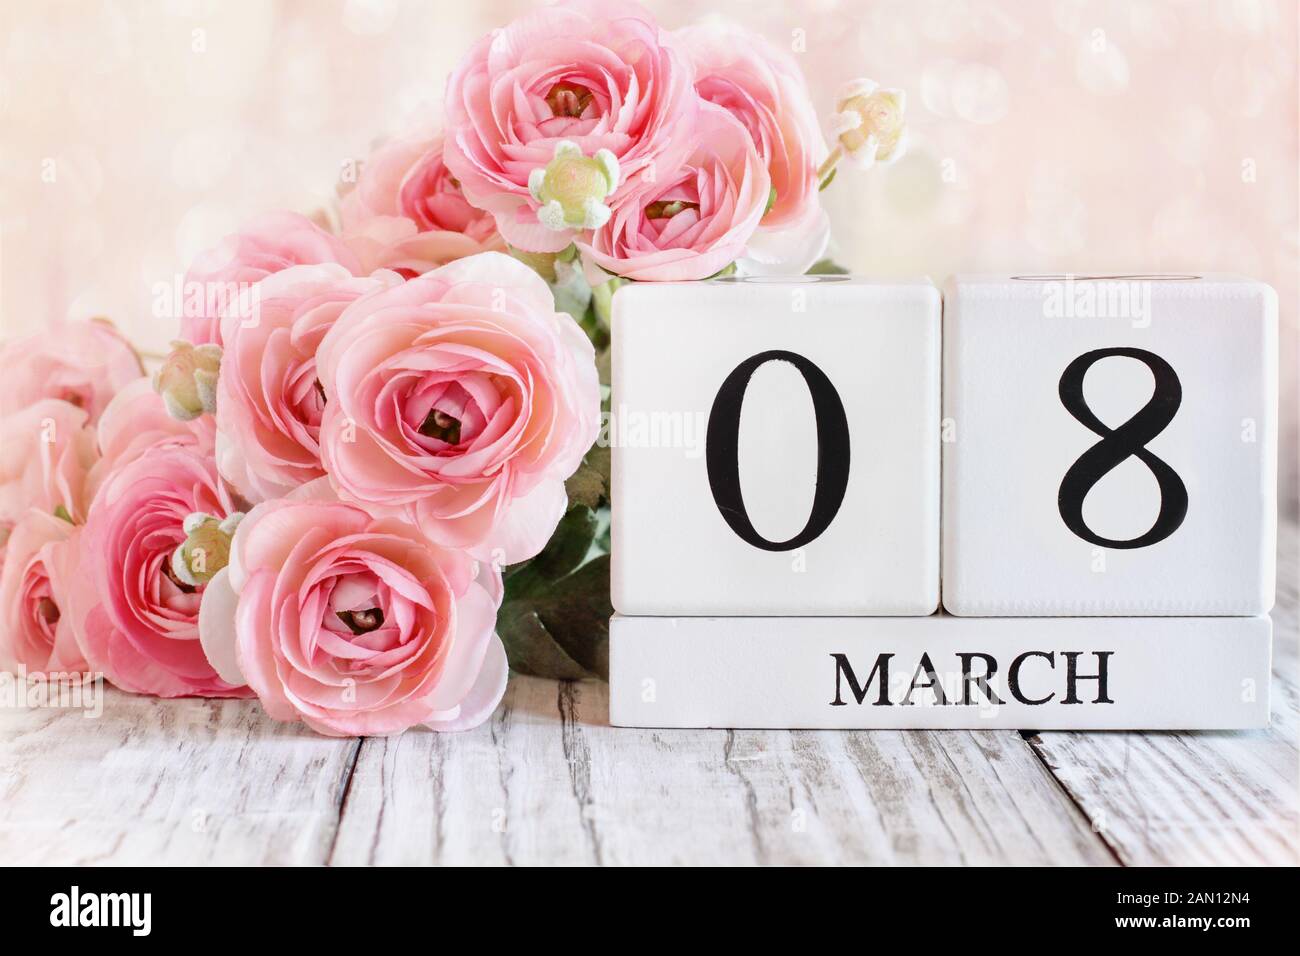 Weißes Holz Kalender Blöcke mit Datum März 08 für den Internationalen Tag der Frau und Rosa ranunkeln Blumen über einen hölzernen Tisch. Stockfoto